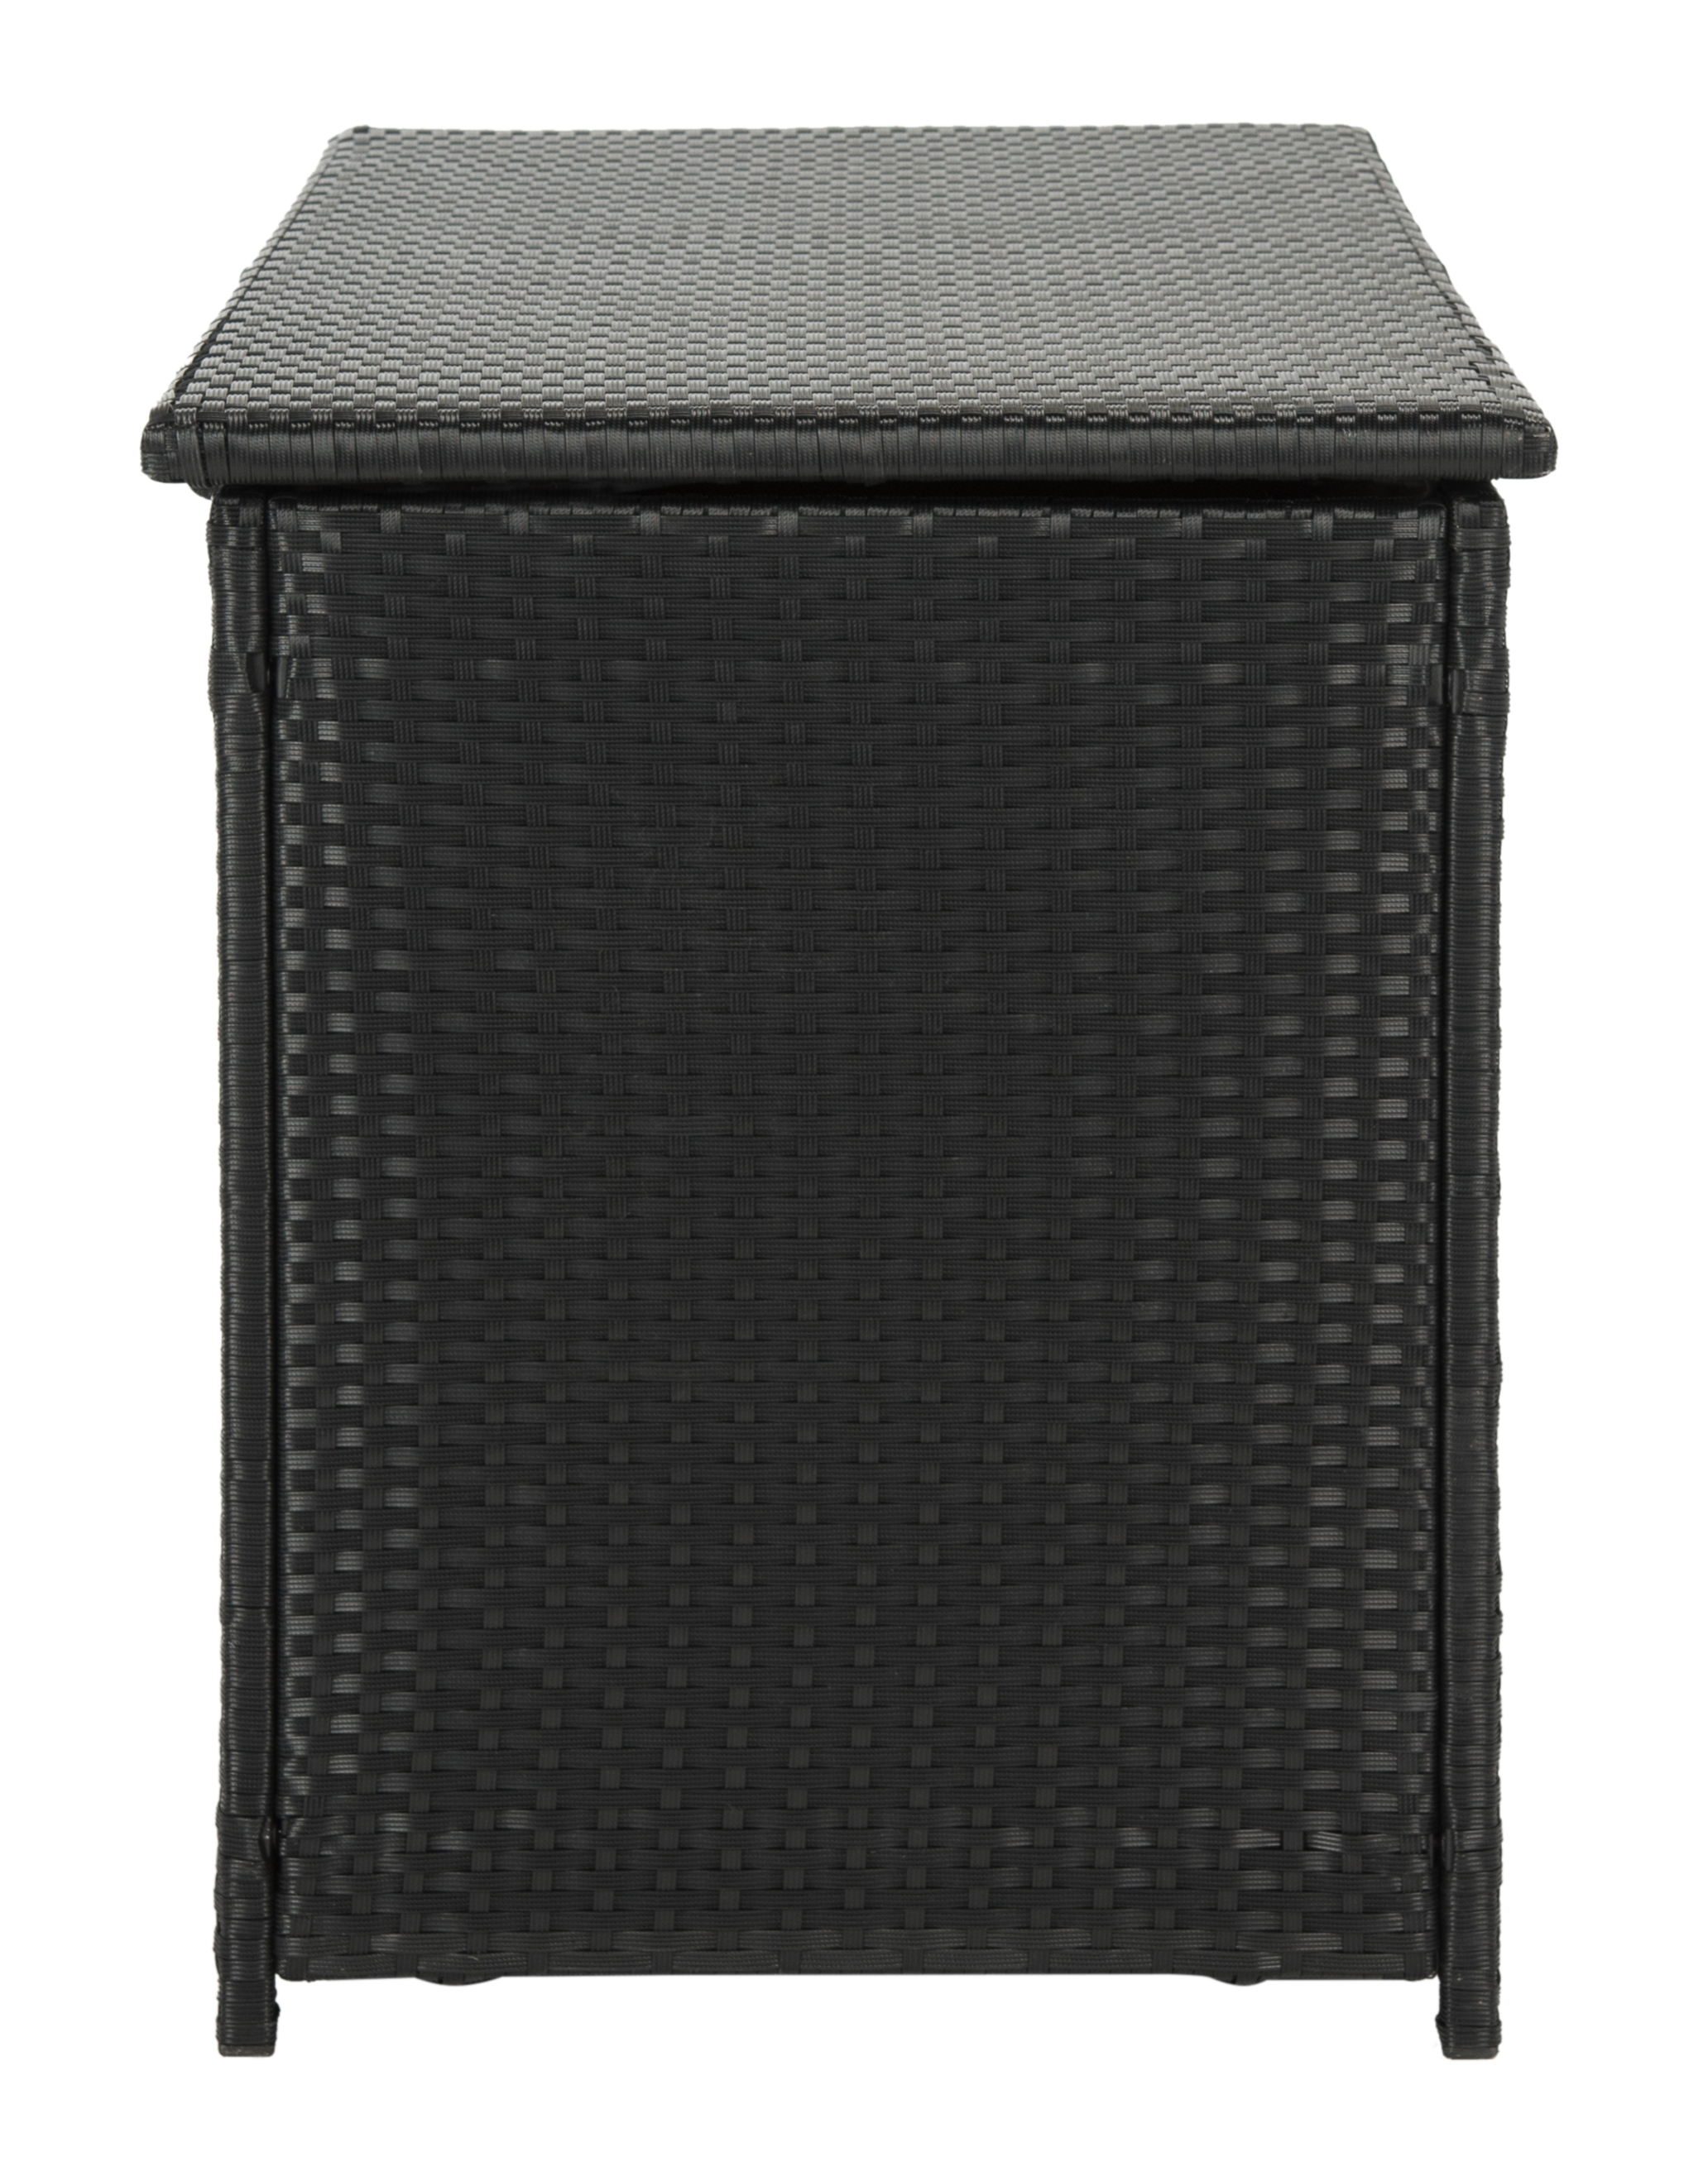 Cosima 53-Inch W 13 Gallon Outdoor Storage Box - Black - Safavieh - Image 2